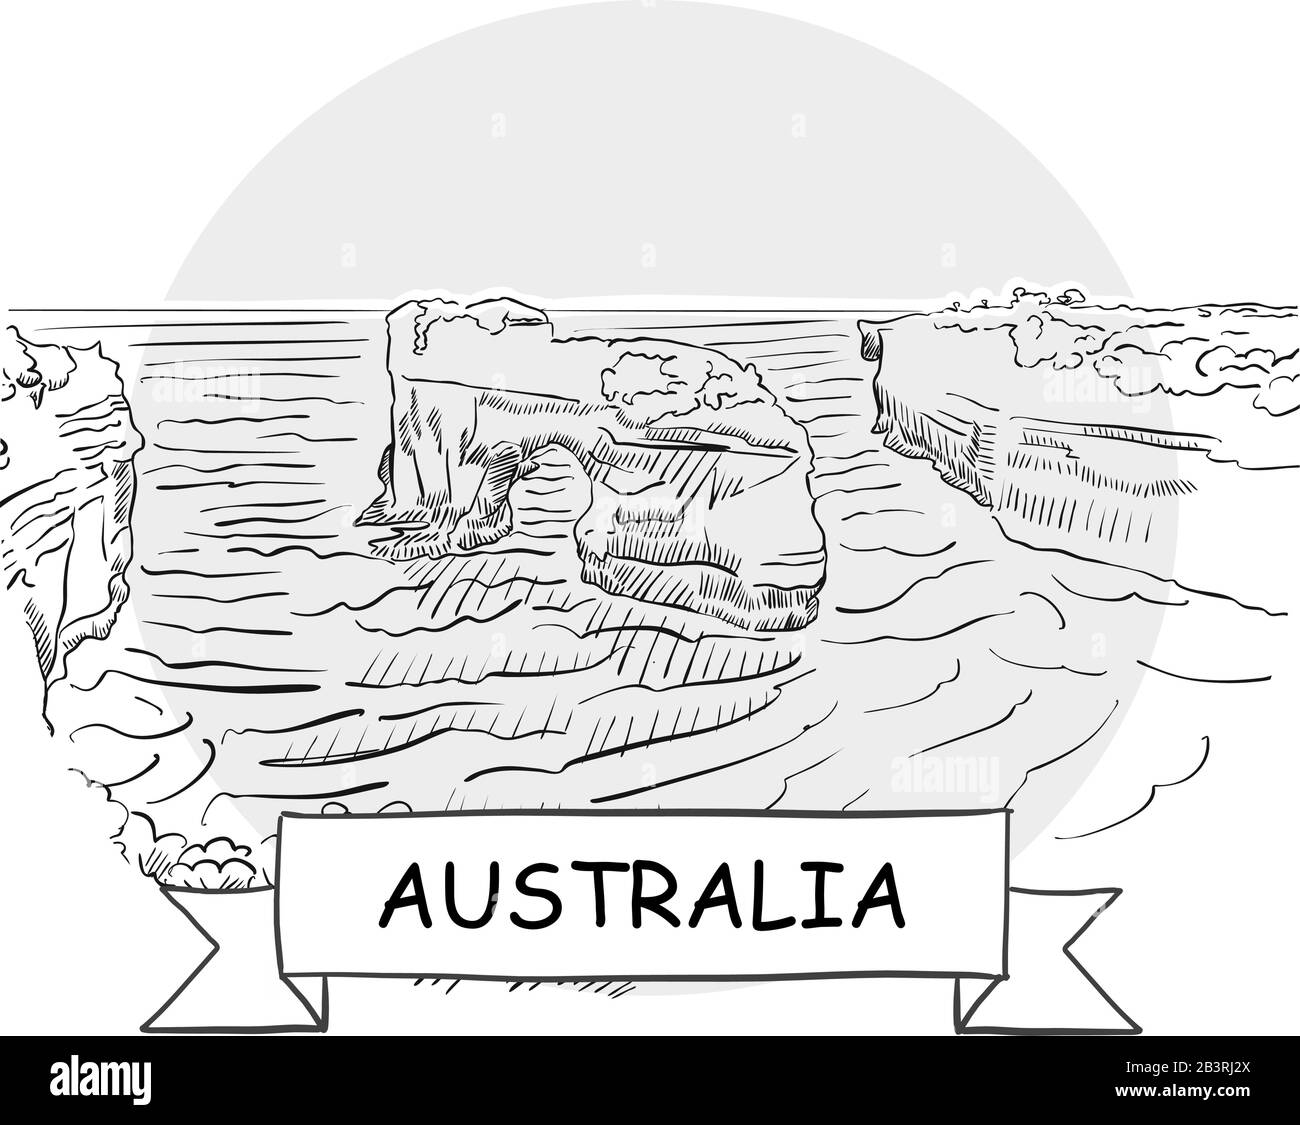 Segno Vettore Urbano Disegnato A Mano In Australia. Illustrazione Della Linea Nera Con Barra Multifunzione E Titolo. Illustrazione Vettoriale